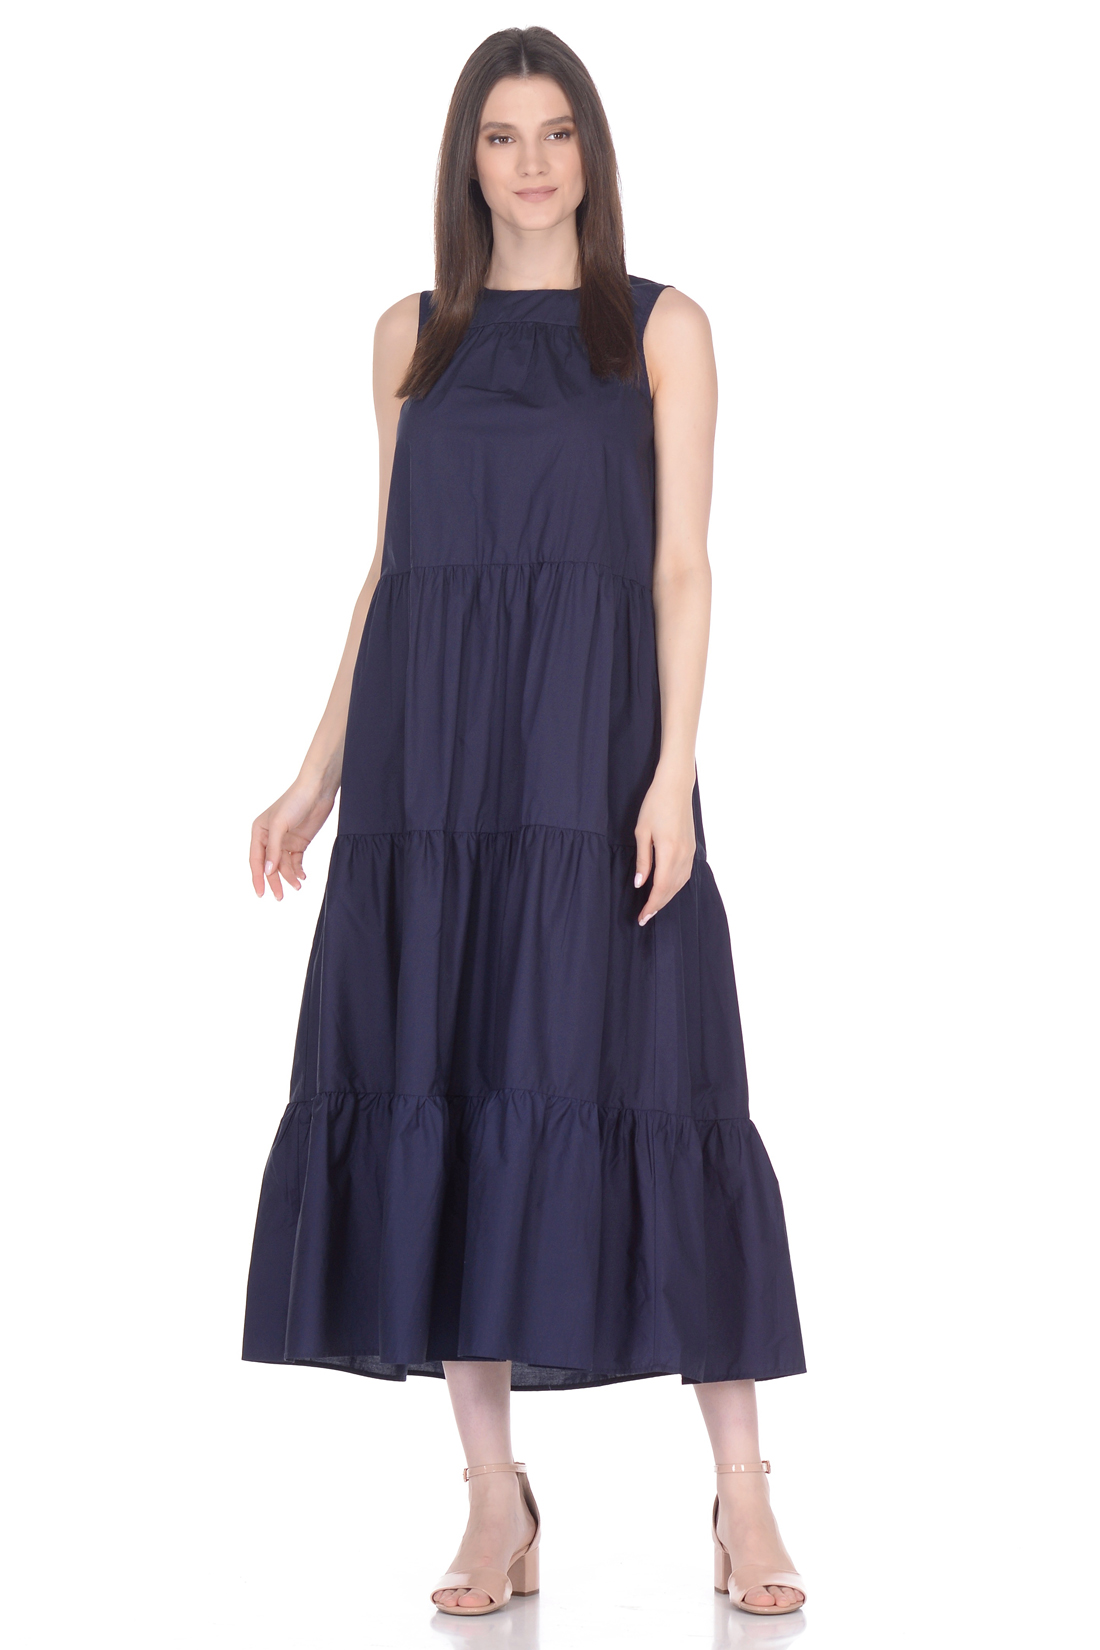 Ярусное платье из хлопка (арт. baon B458062), размер S, цвет синий Ярусное платье из хлопка (арт. baon B458062) - фото 1